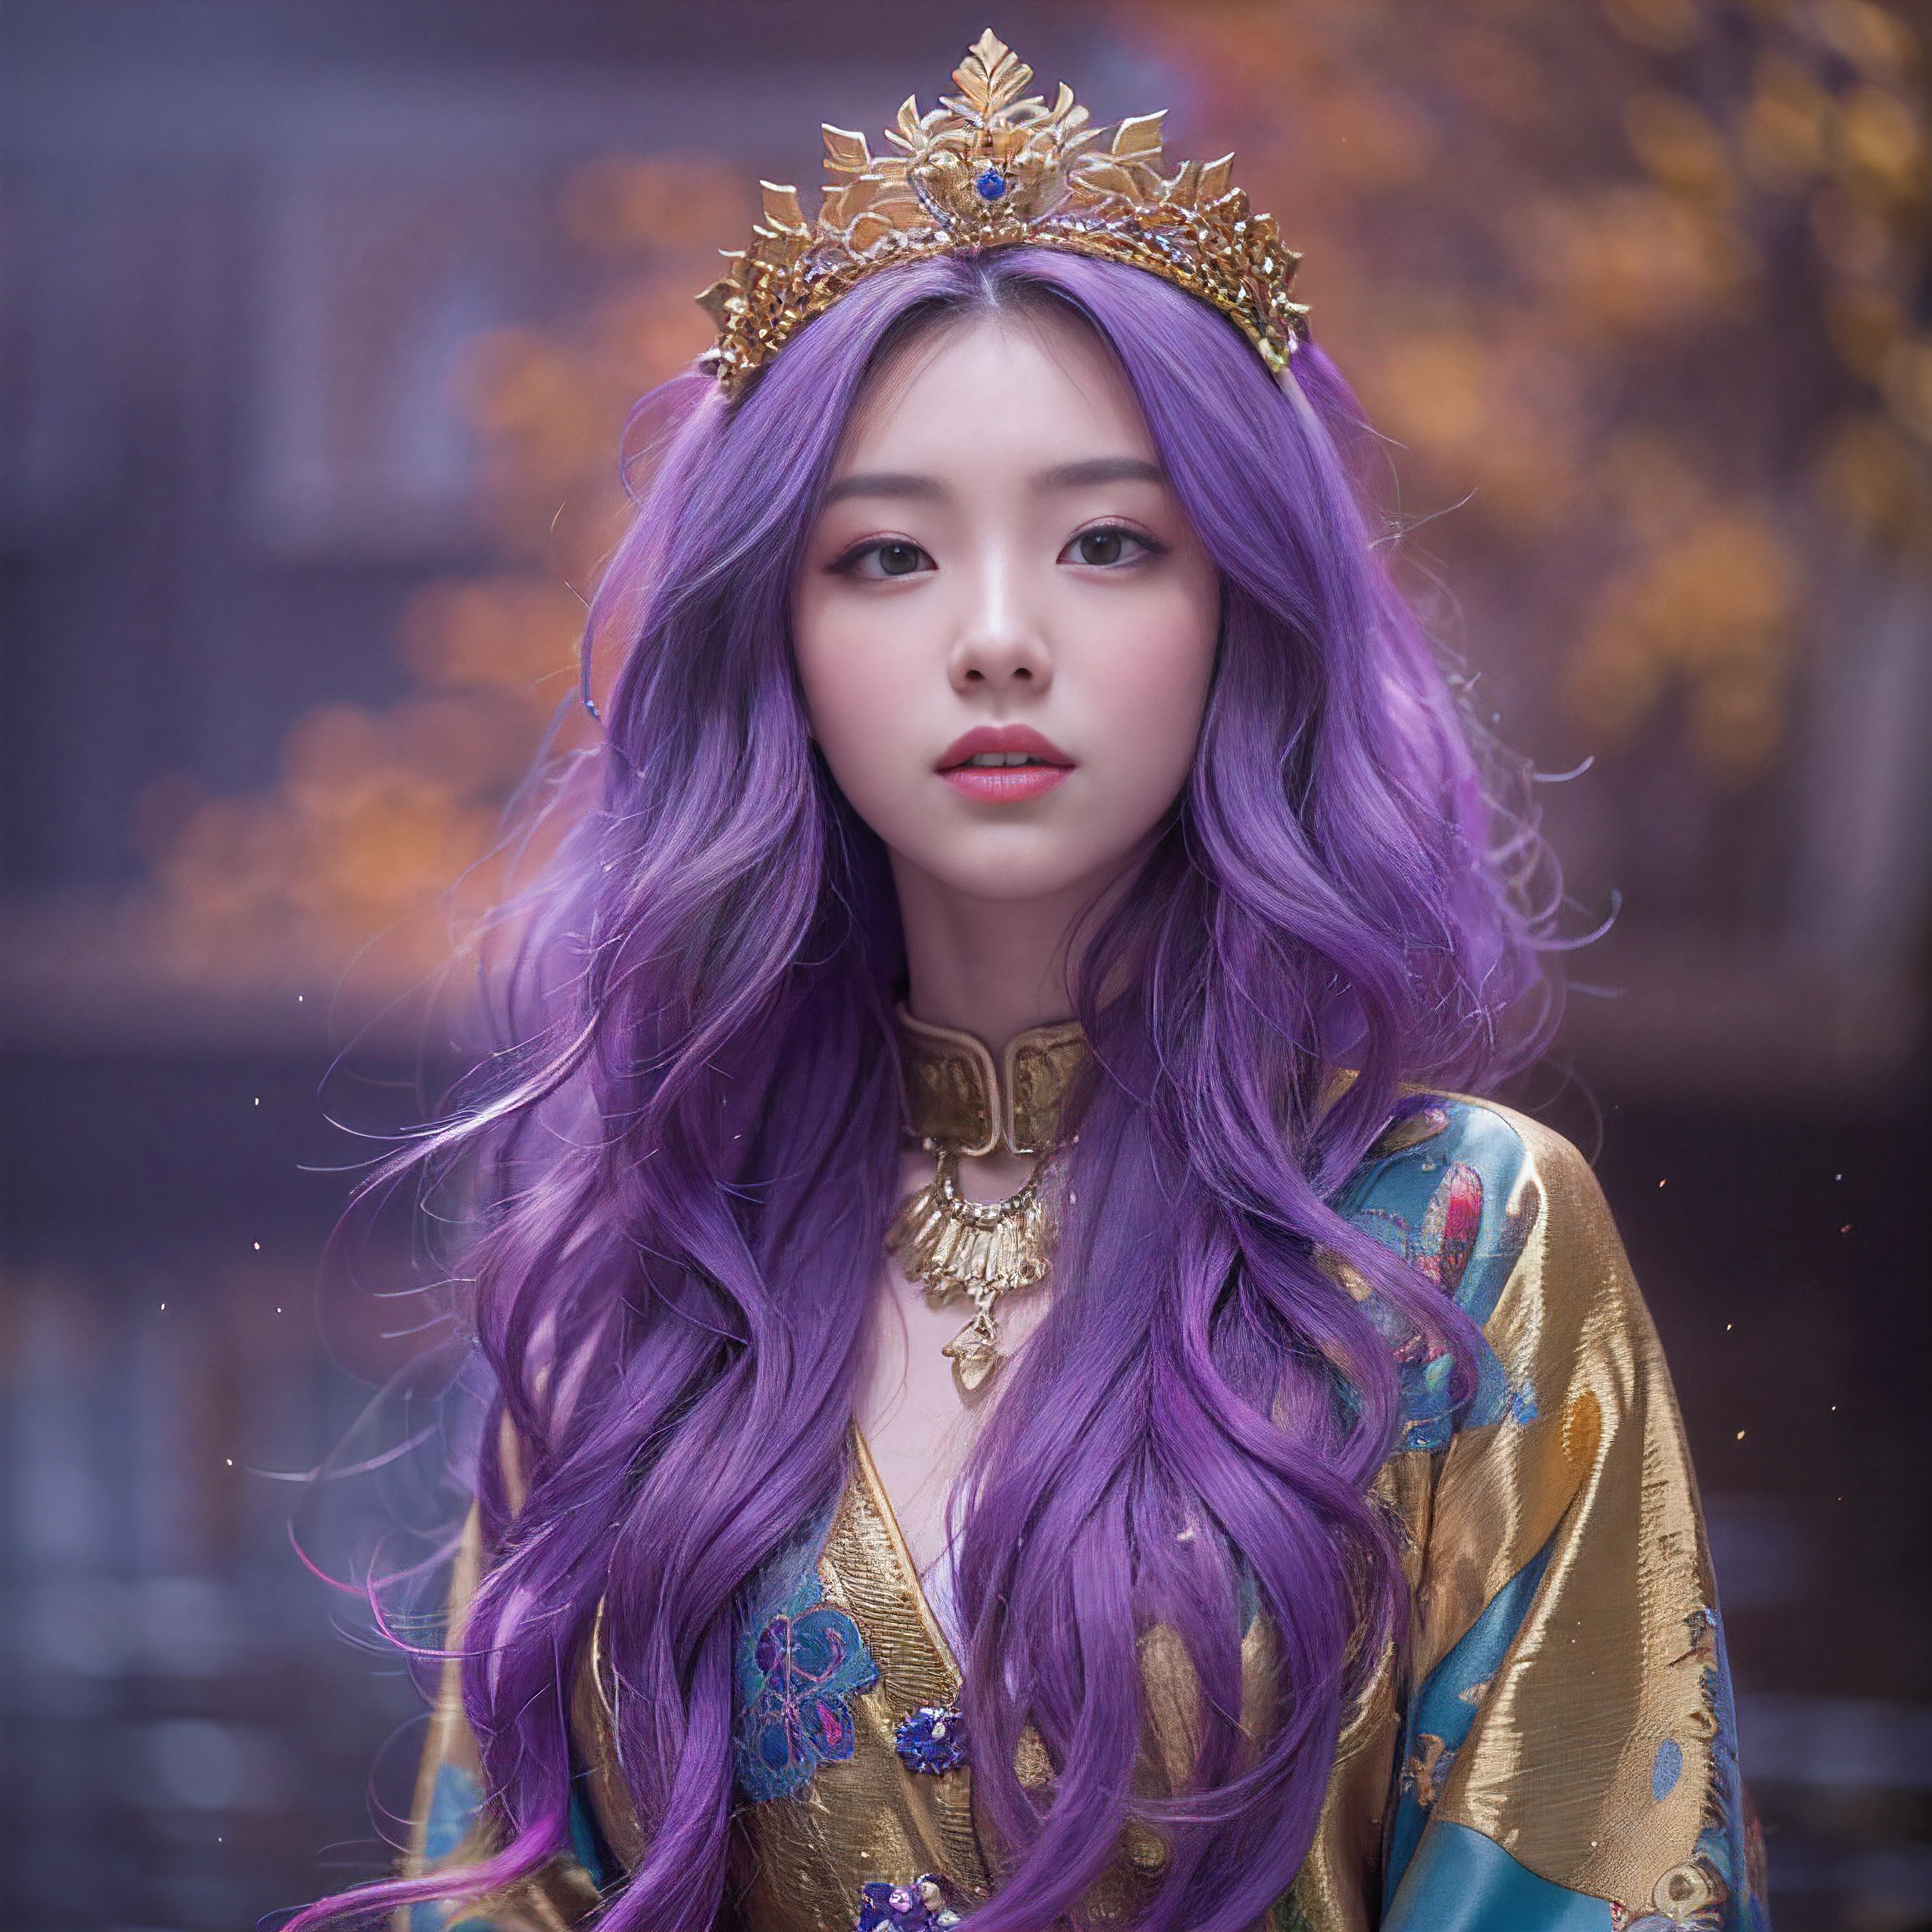 元気ガール 32K（傑作，キロ，ハイパーHD，32K）長く流れるような明るい紫色の髪，秋の池，咲く， 色， アジア人 （Genki Girl）， （絹のスカーフ）， 戦闘姿勢， 地面を見て， 長い白い髪， 浮かぶ鮮やかな紫色， 火雲模様のゴールドティアラ， 中国の長袖の金絹の衣服， （抽象的なメタバーススプラッシュ：1.2）， 白い背景，ロータス活力保護剤（現実的に：1.4），明るい紫色の髪，道路上の煙，背景は純粋です， 高解像度， 詳細， RAW写真， シャープ， Nikon D850 フィルムストックフォト by Jefferies Lee 4 Kodak Portra 400 カメラ F1.6ショット, 豊かな色彩, 超リアルな鮮やかな質感, ドラマチックな照明, アンリアル エンジン アート ステーション トレンド, シネスティア 800，長く流れるような明るい紫色の髪を持つ少女